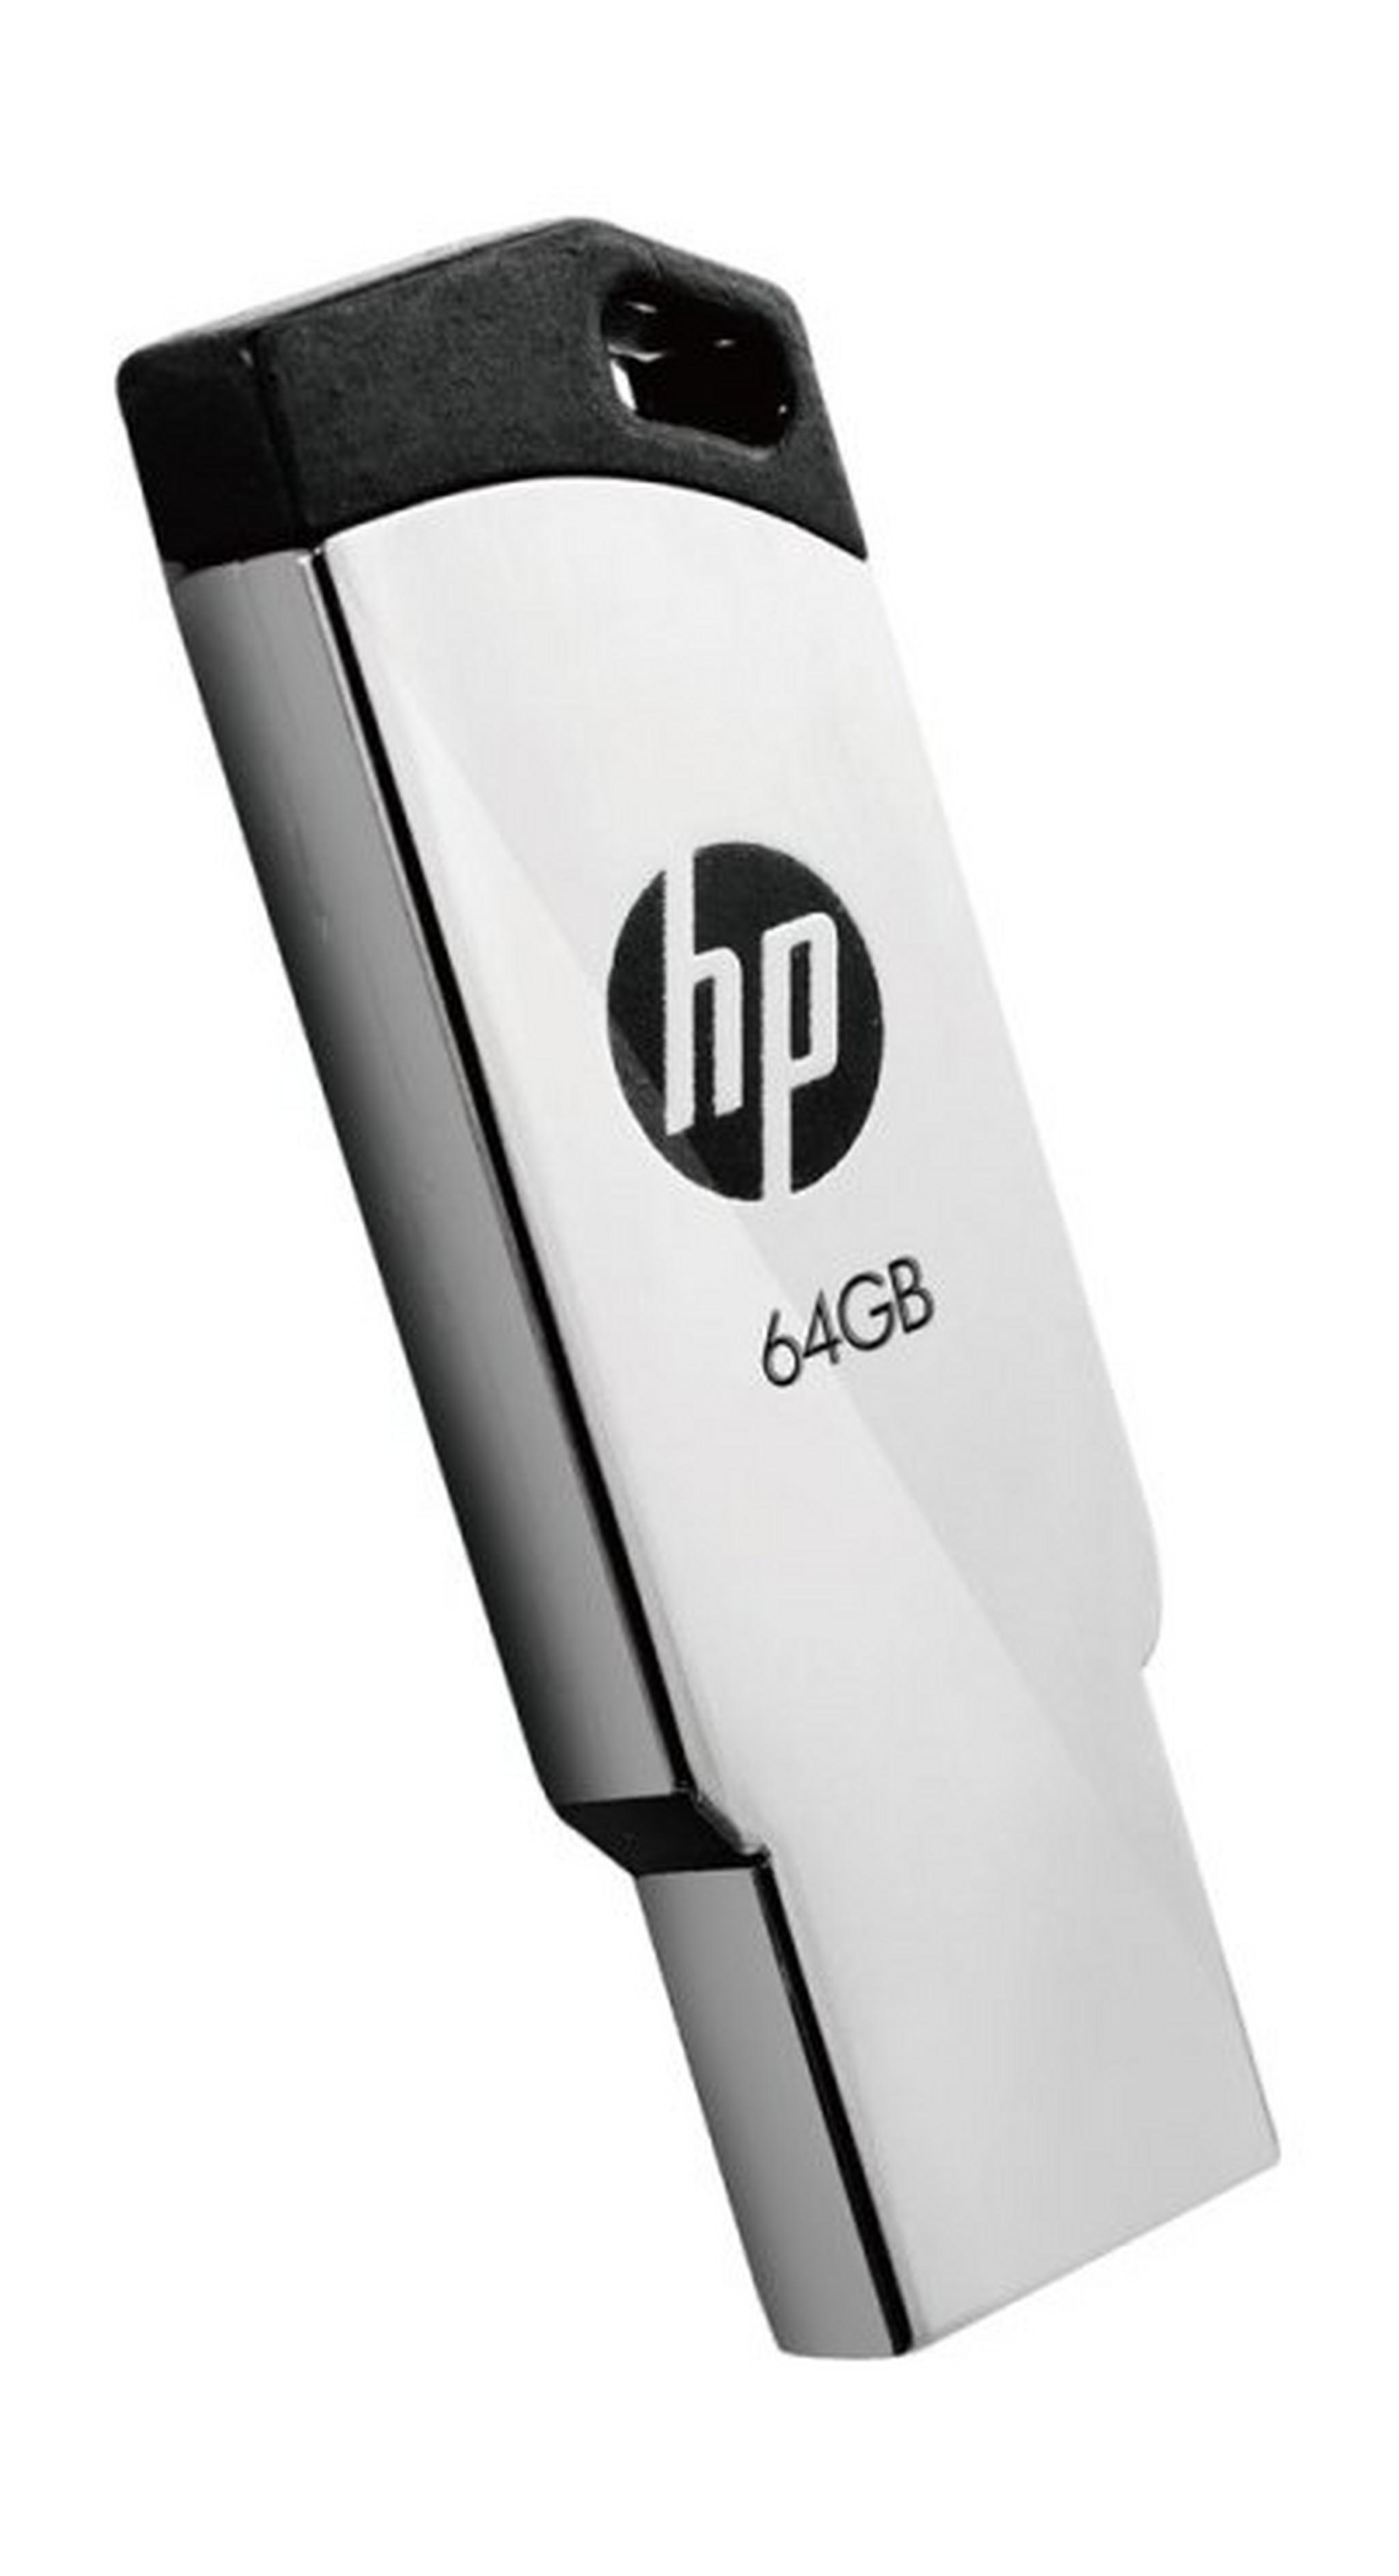 HP 2.0 64GB USB Flash Drive - HPFD236W64